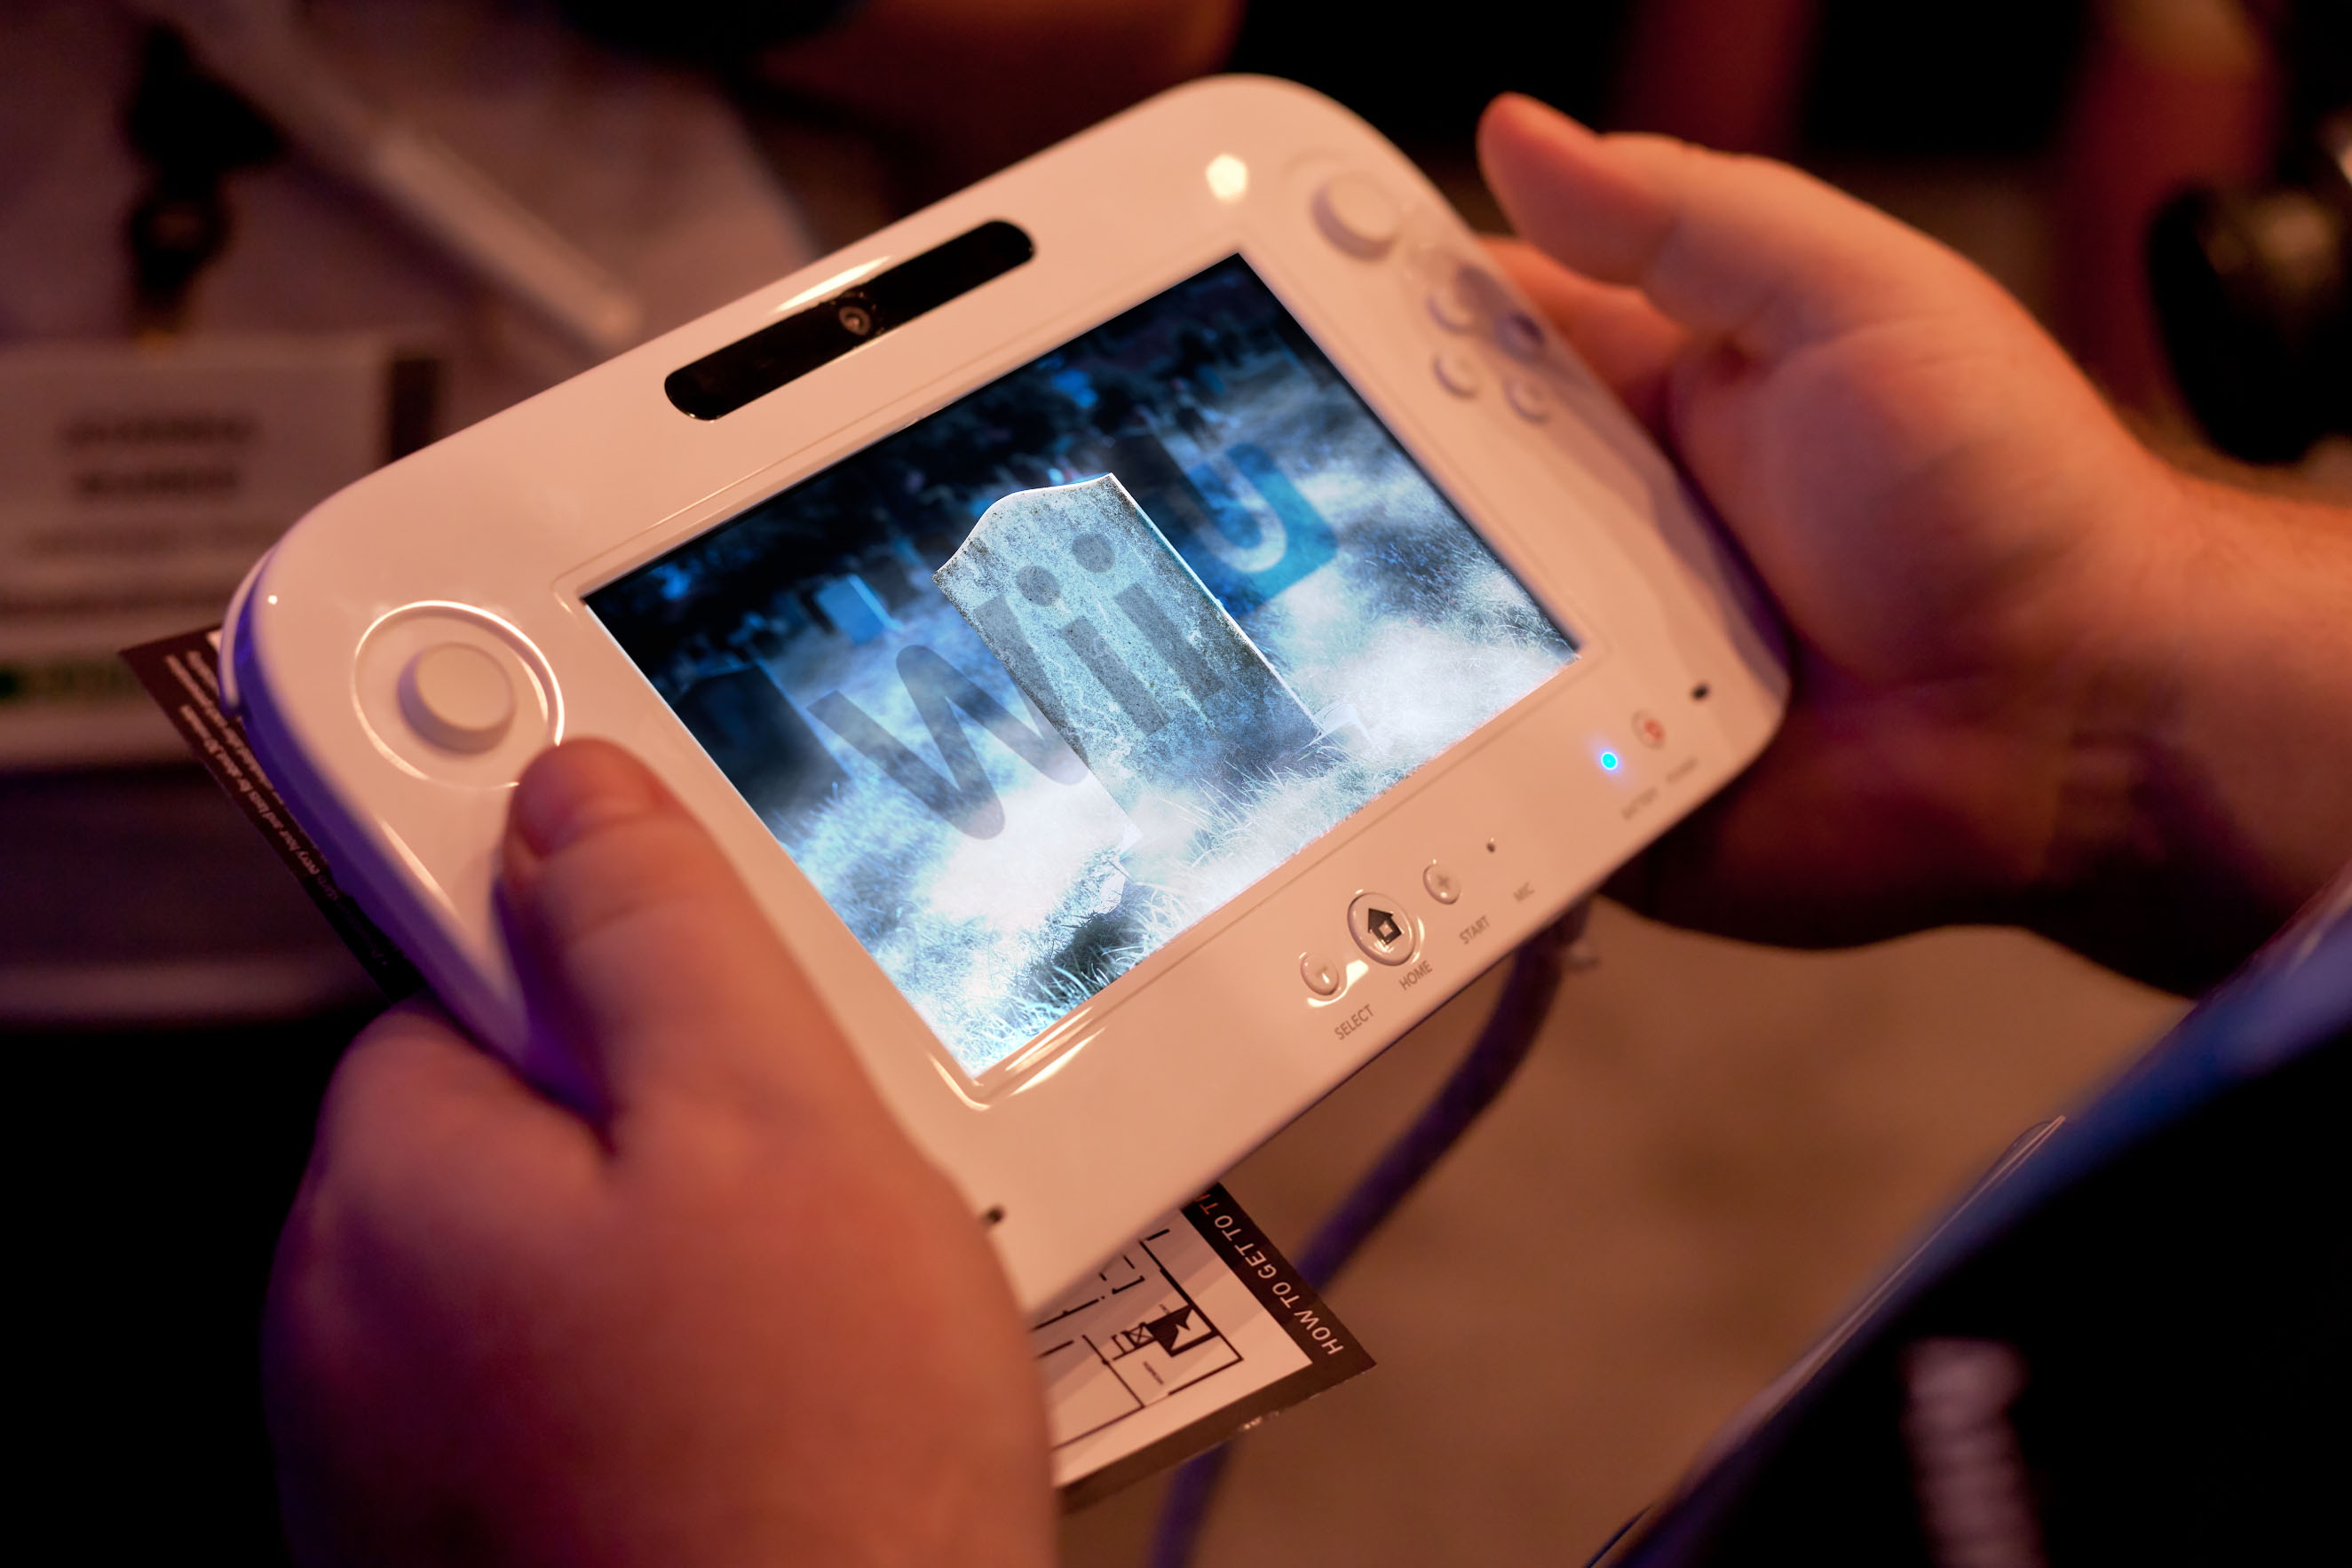 La Wii U n'est pas (encore) morte, Nintendo rétablit les serveurs en ligne sur ces deux jeux populaires